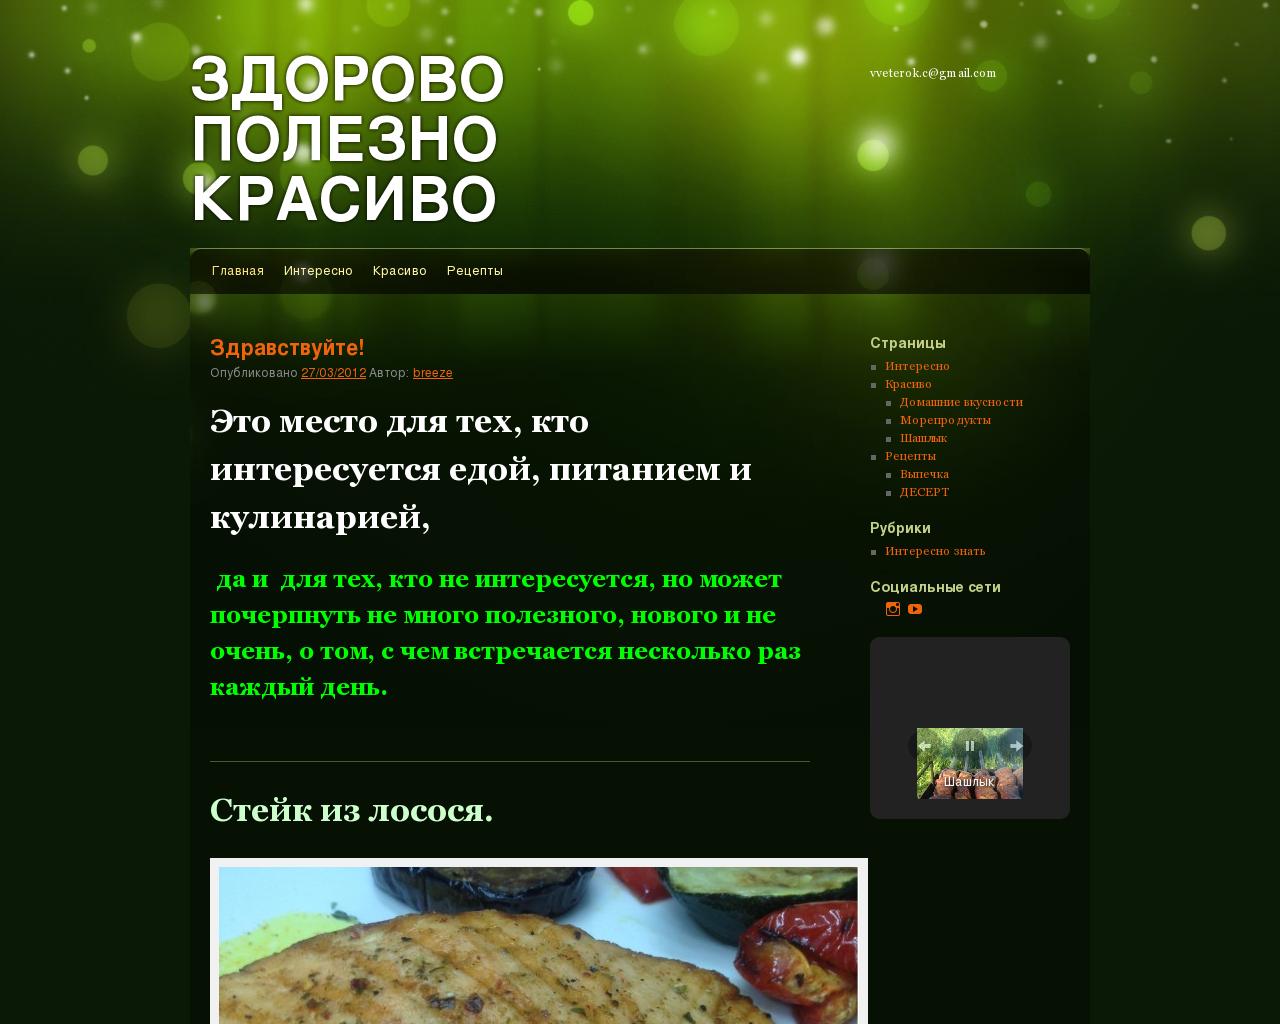 Изображение сайта veterku.ru в разрешении 1280x1024